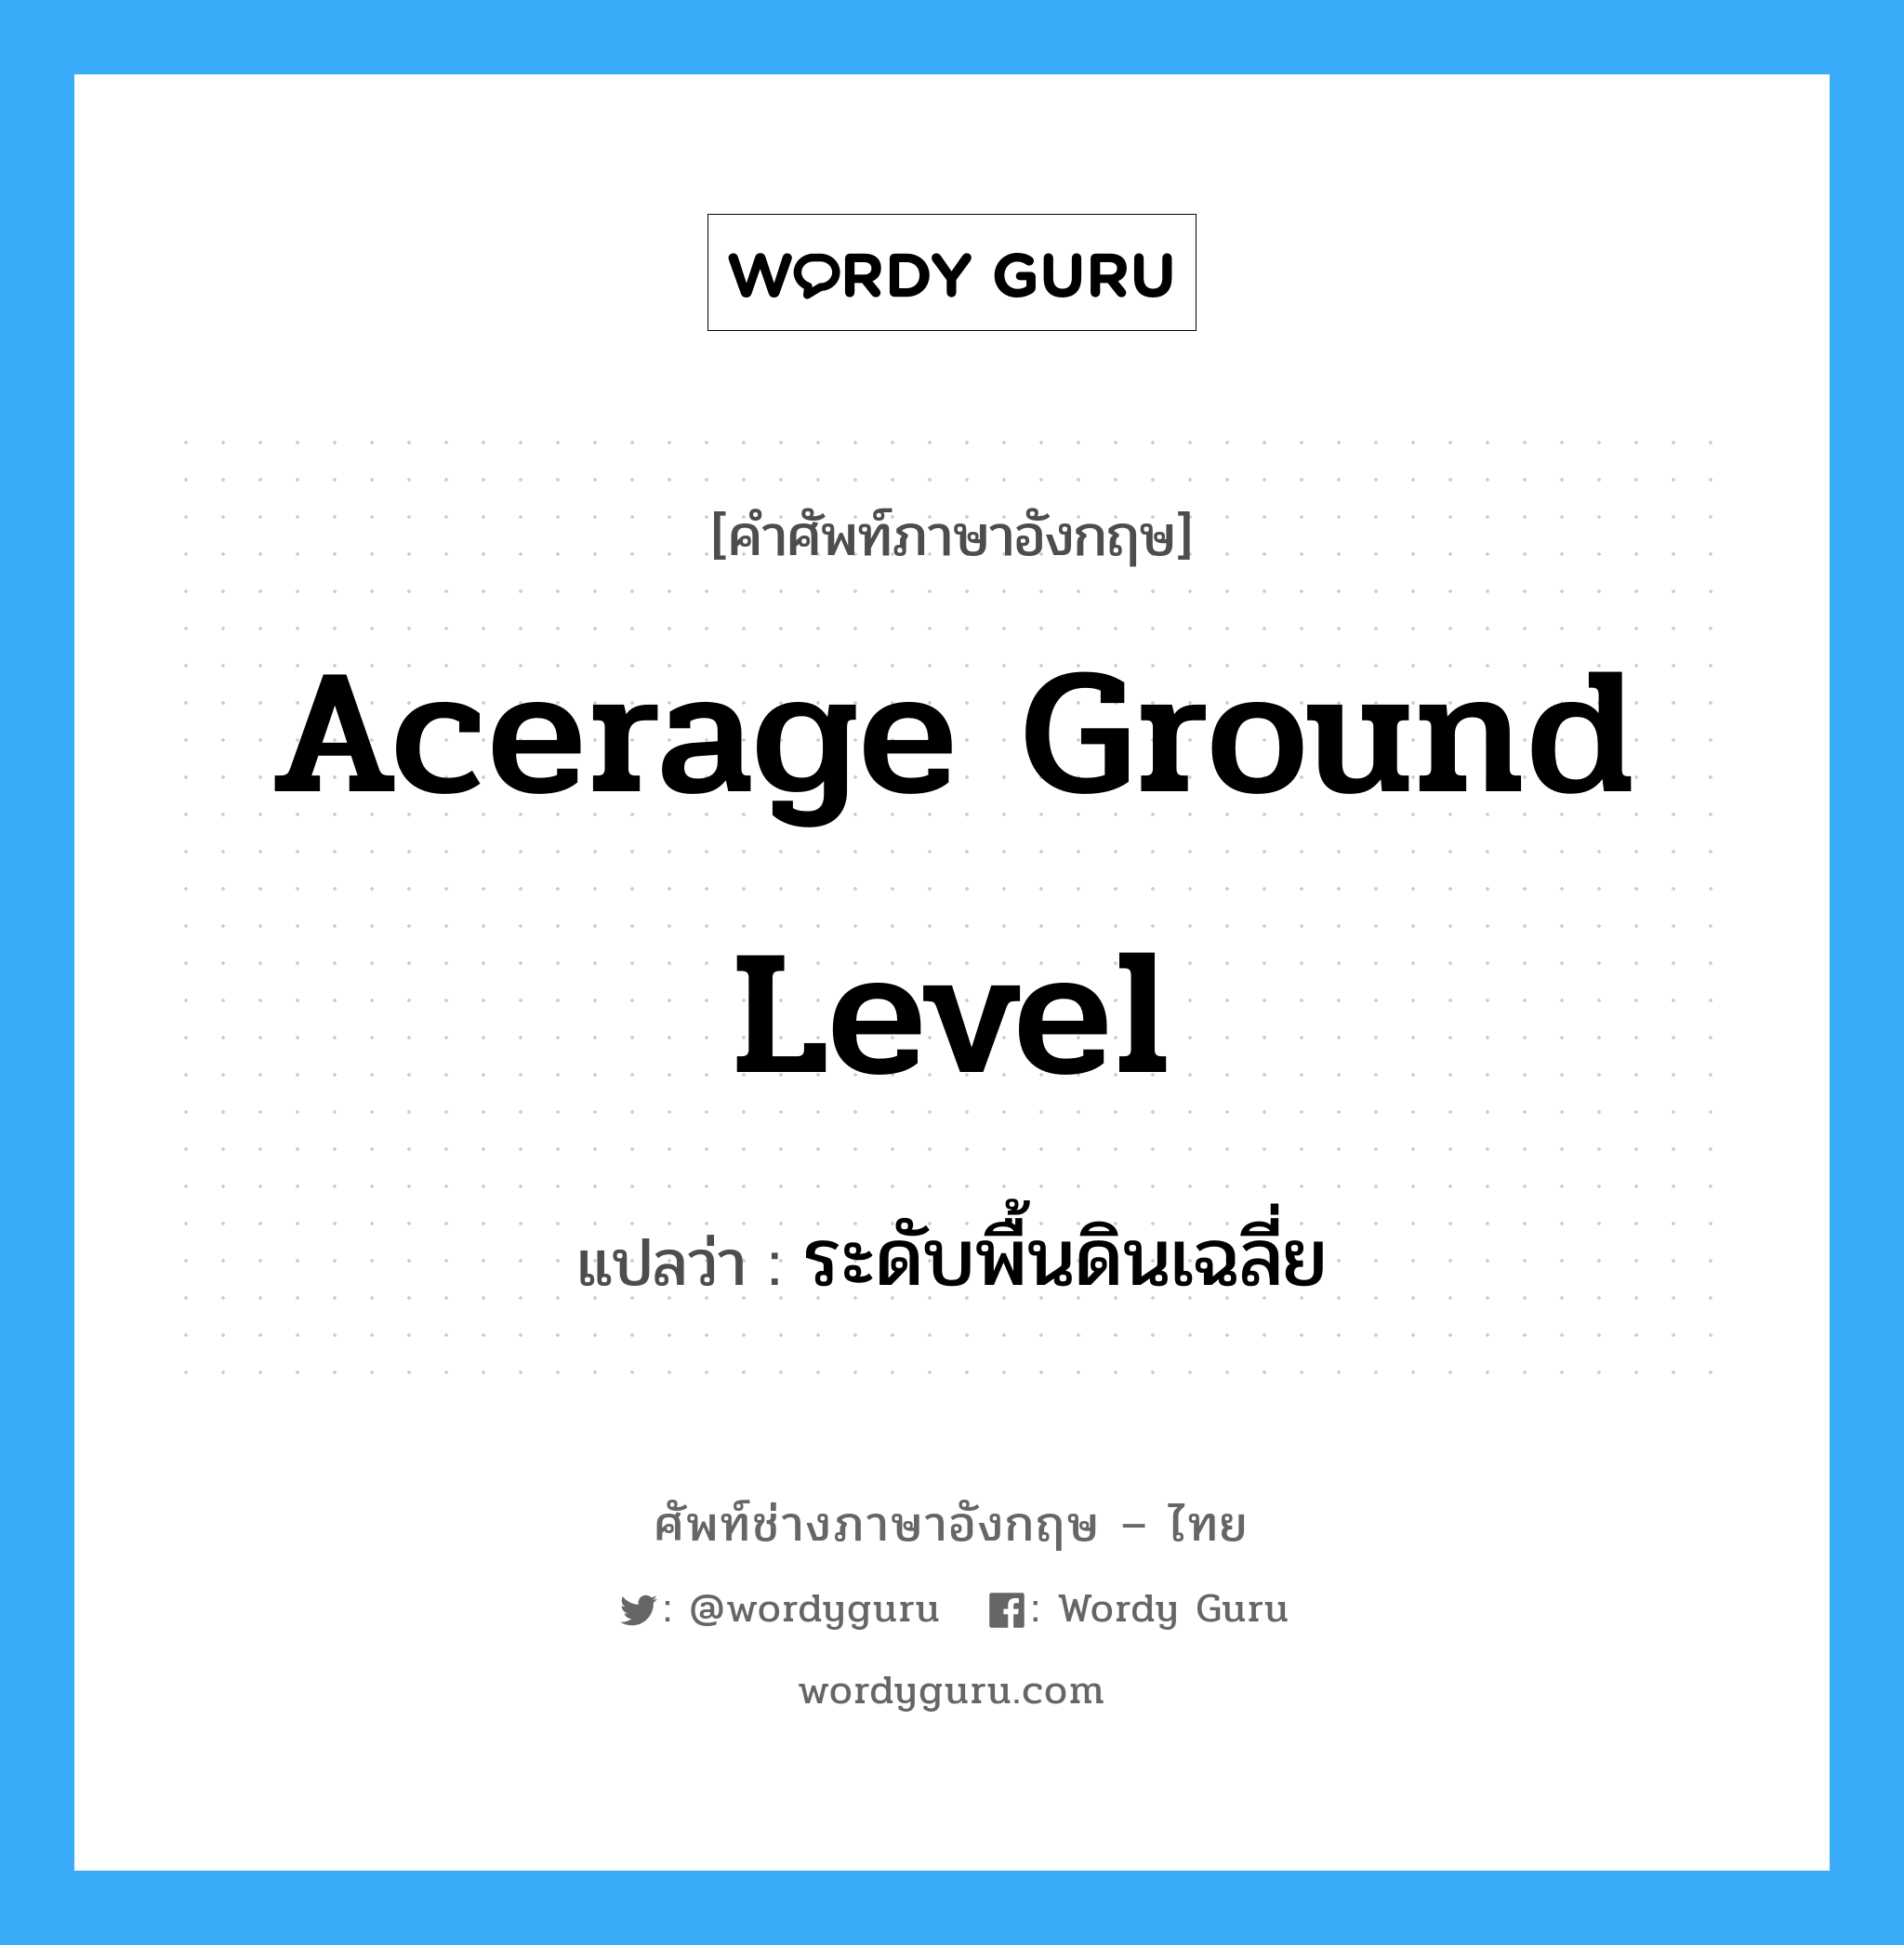 ระดับพื้นดินเฉลี่ย ภาษาอังกฤษ?, คำศัพท์ช่างภาษาอังกฤษ - ไทย ระดับพื้นดินเฉลี่ย คำศัพท์ภาษาอังกฤษ ระดับพื้นดินเฉลี่ย แปลว่า acerage ground level